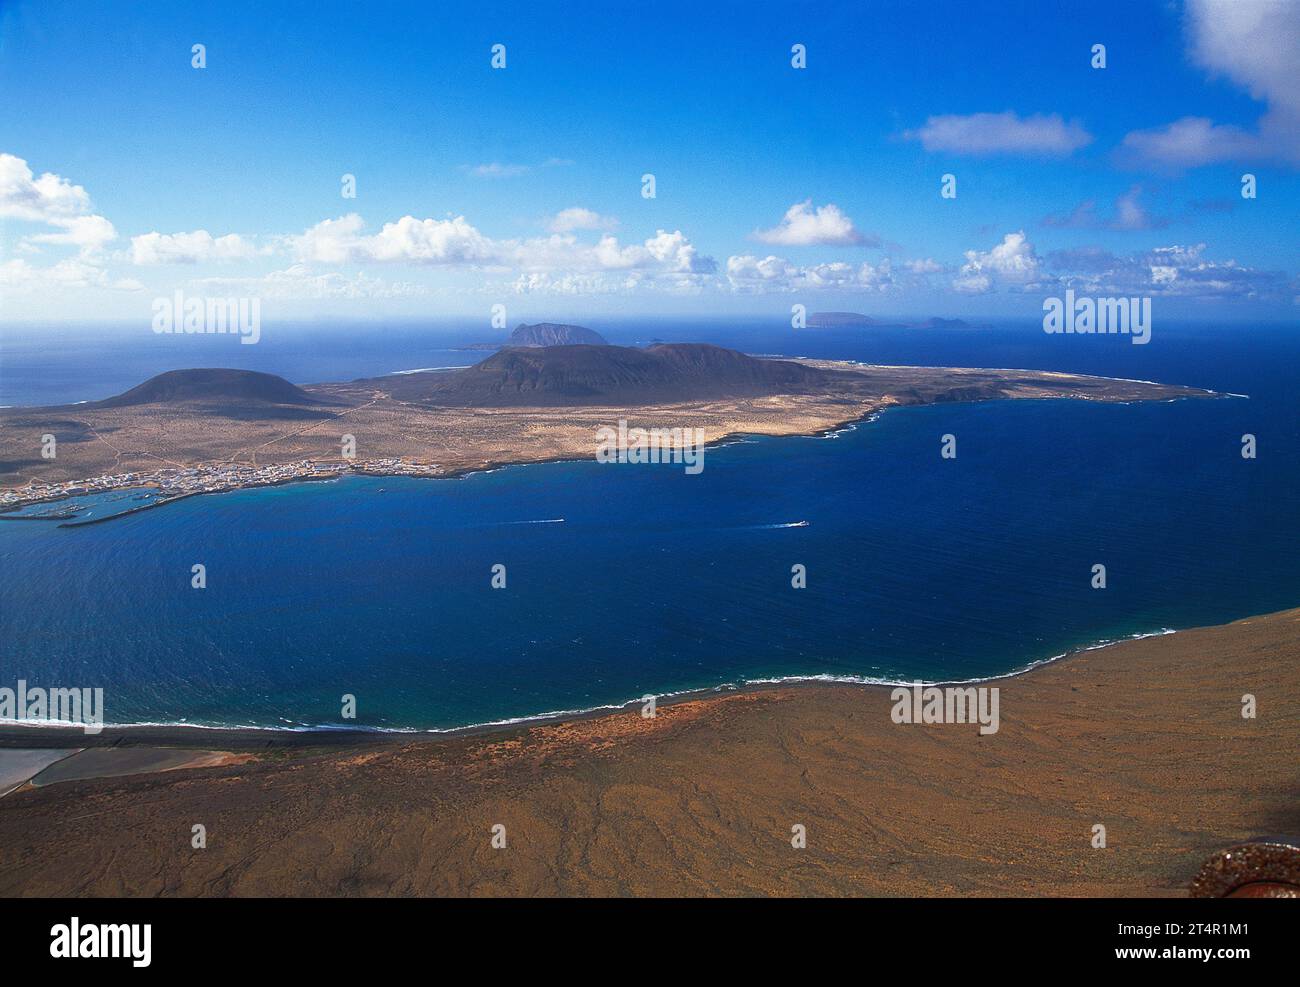 La Graciosa island, view from El Mirador. Chinijo Islands, Canary Islands, Spain. Stock Photo